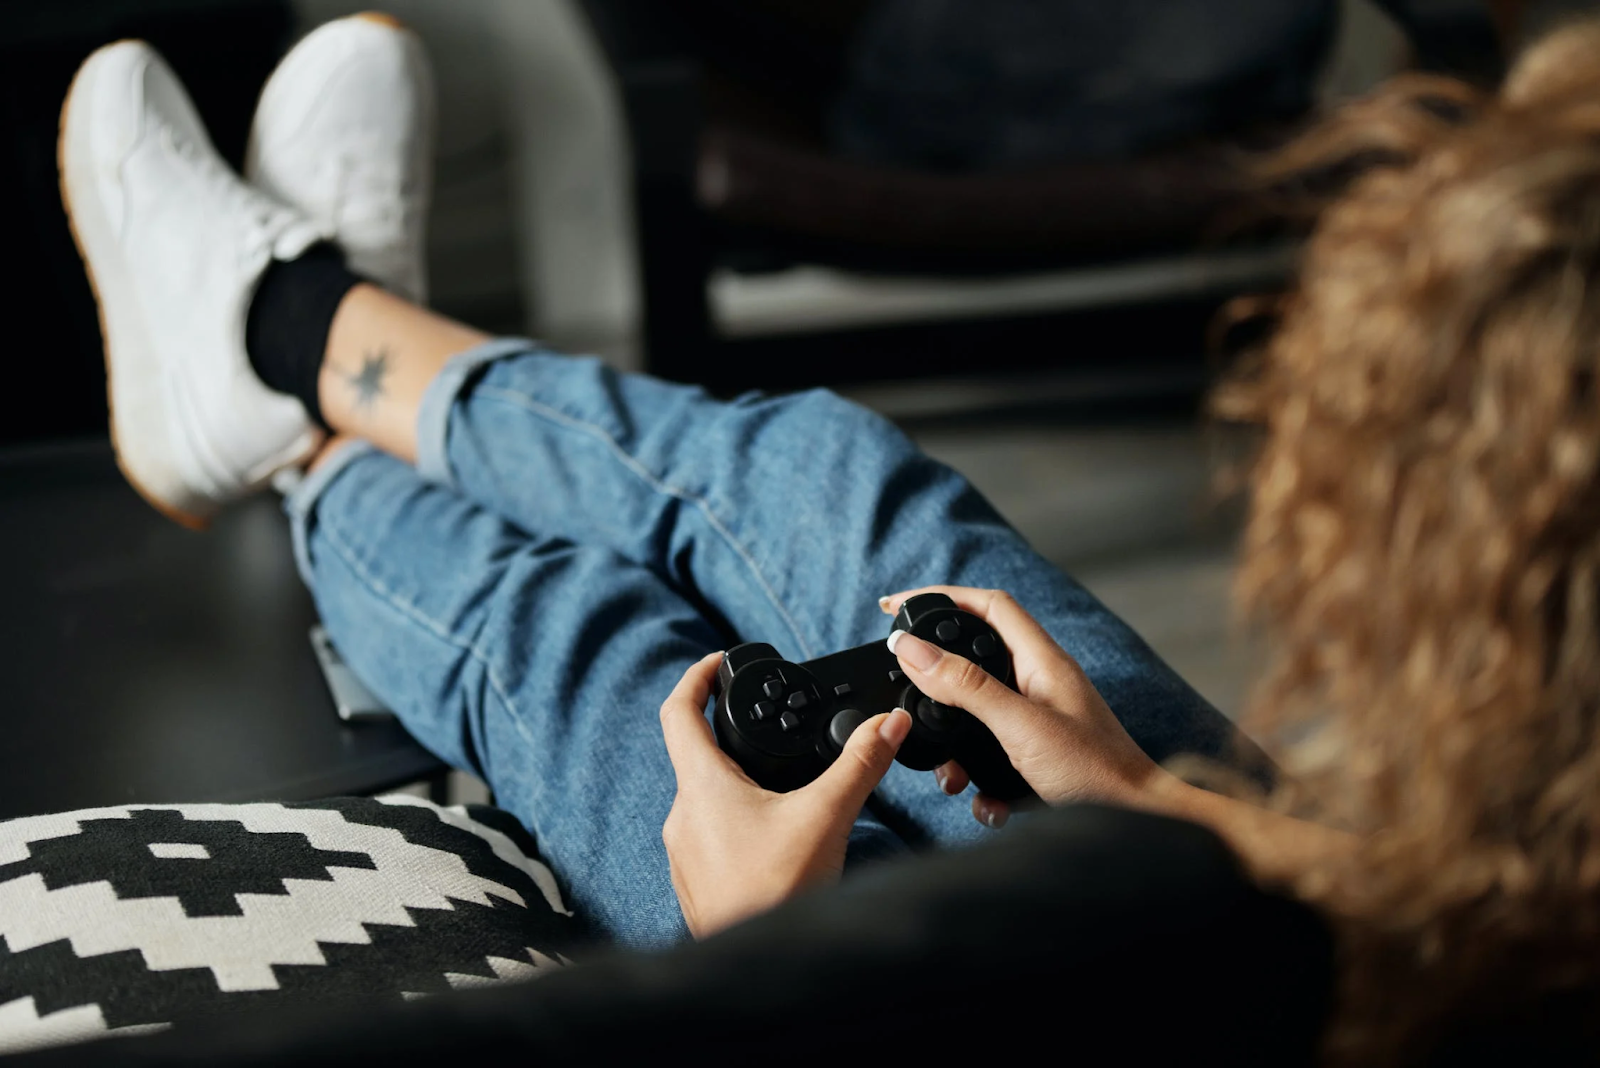 La dépendance aux jeux vidéo, un problème de santé publique